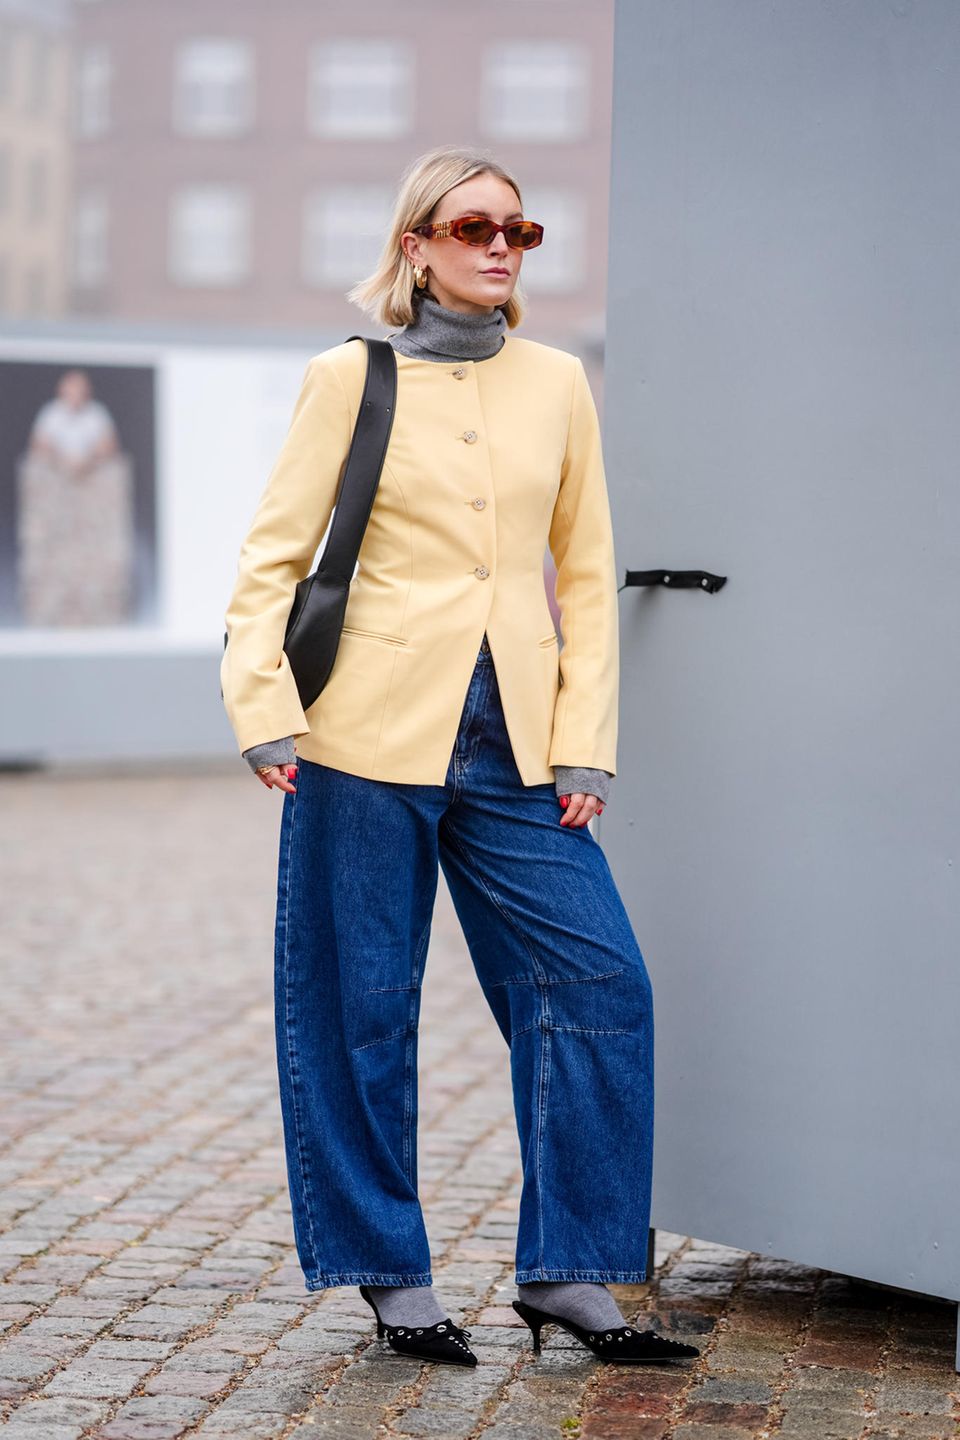 Auch an Tag zwei der Kopenhagener Fashion Week begeistern die Gäste wieder mit ihren Looks. Dieser Gast kombiniert einen grauen Rollkragenpullover mit einer pastell-gelben Jacke und einer Wide-Leg-Jeans. Ihre Socken sind farblich perfekt auf den Pullover abgestimmt, abgerundet wird der Look mit stilvoll gewählten Accessoires.